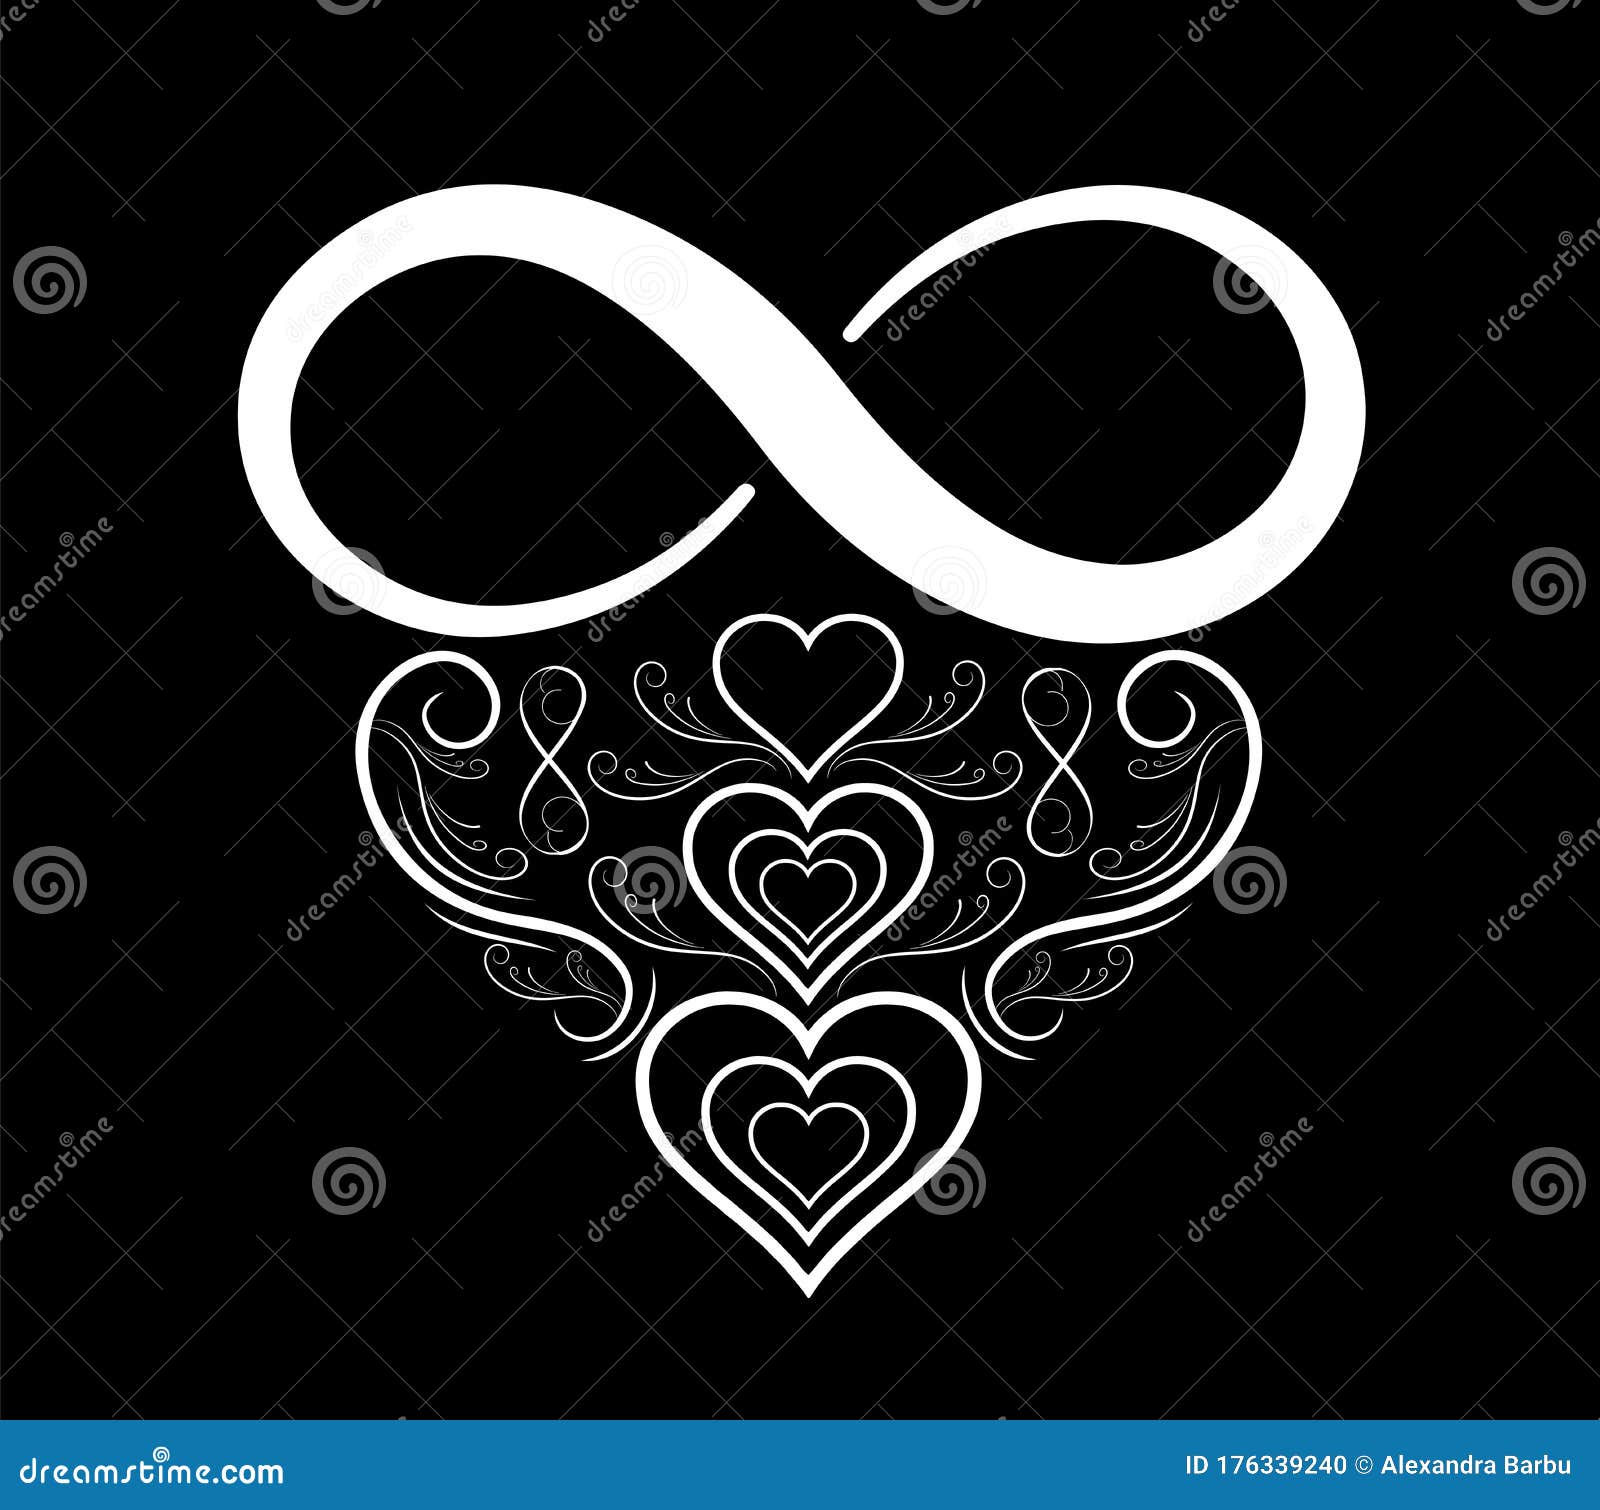 infinity heart logo tattoo 